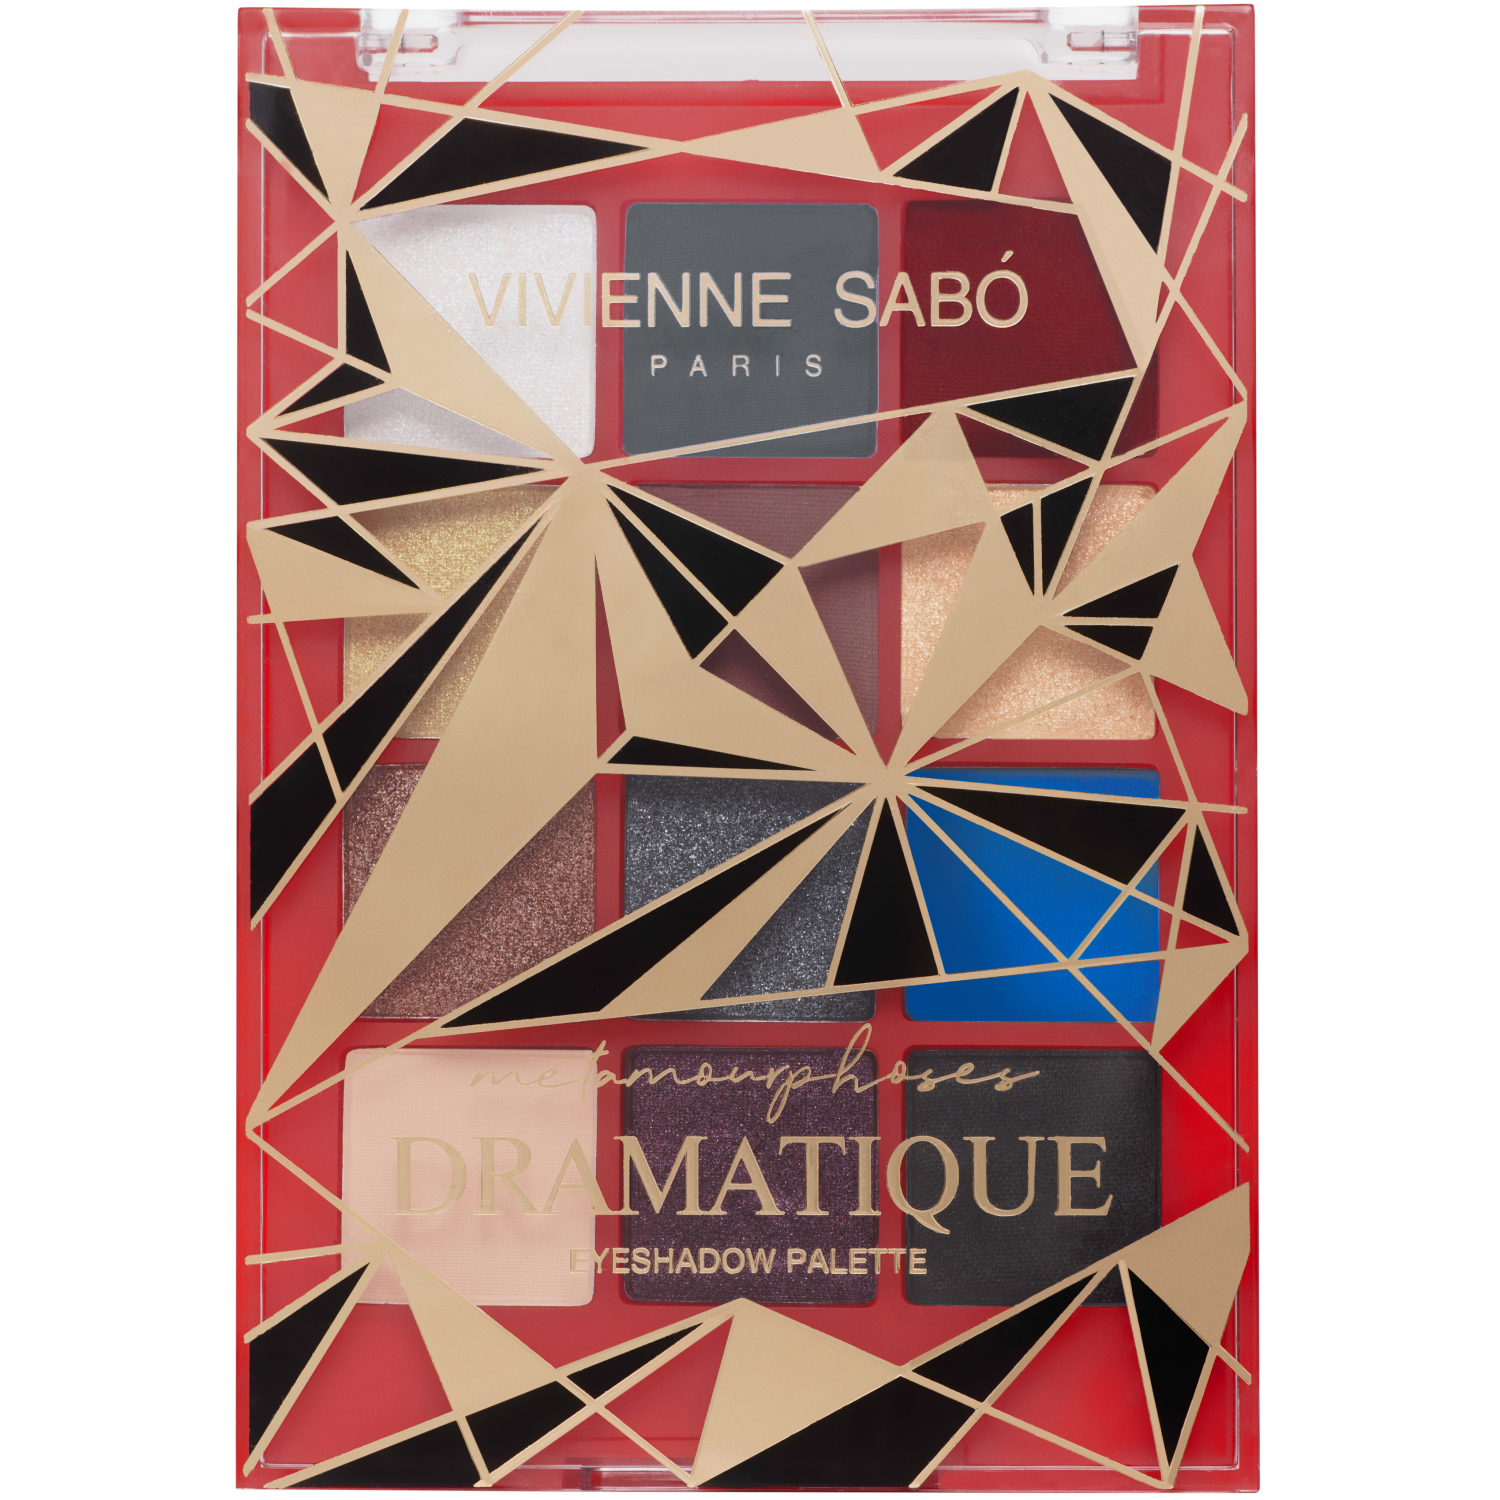 Палетка теней Vivienne Sabo Metamourphoses Dramatique 03 палетка теней для век 4 а